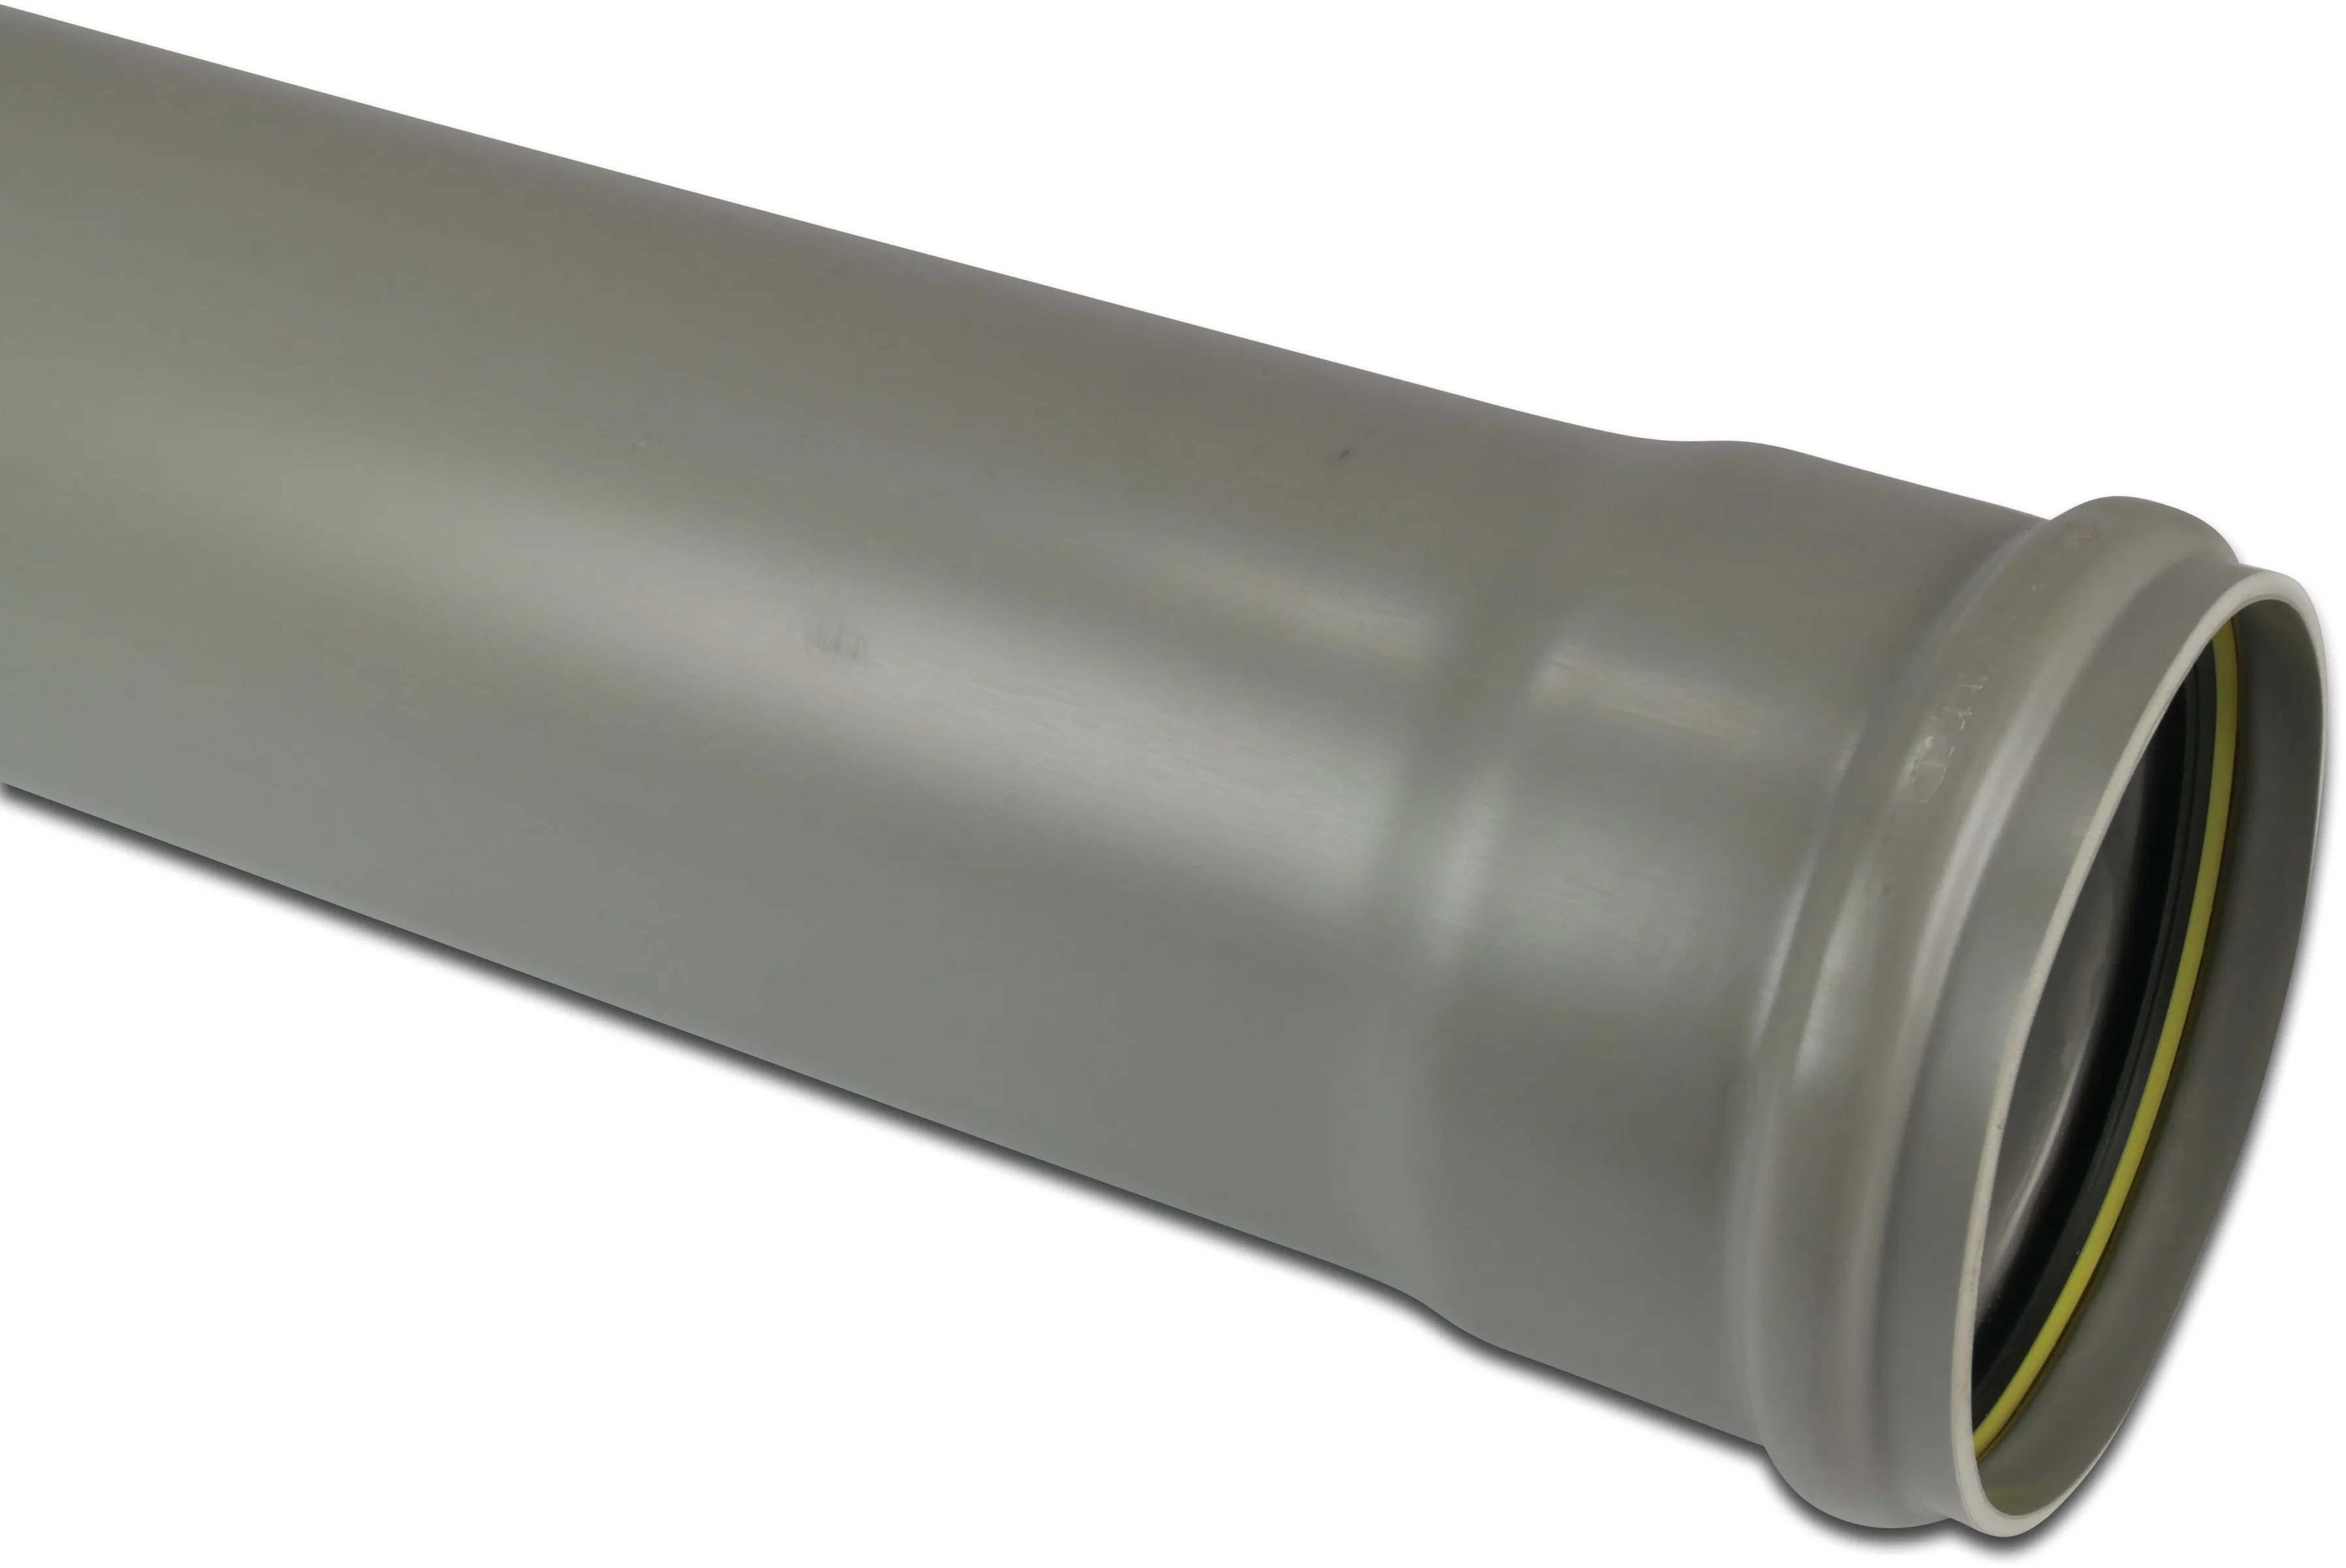 Abflussrohr PVC-U 110 mm x 2,2 mm SN2 Steckmuffe x Glatt Grau 5m